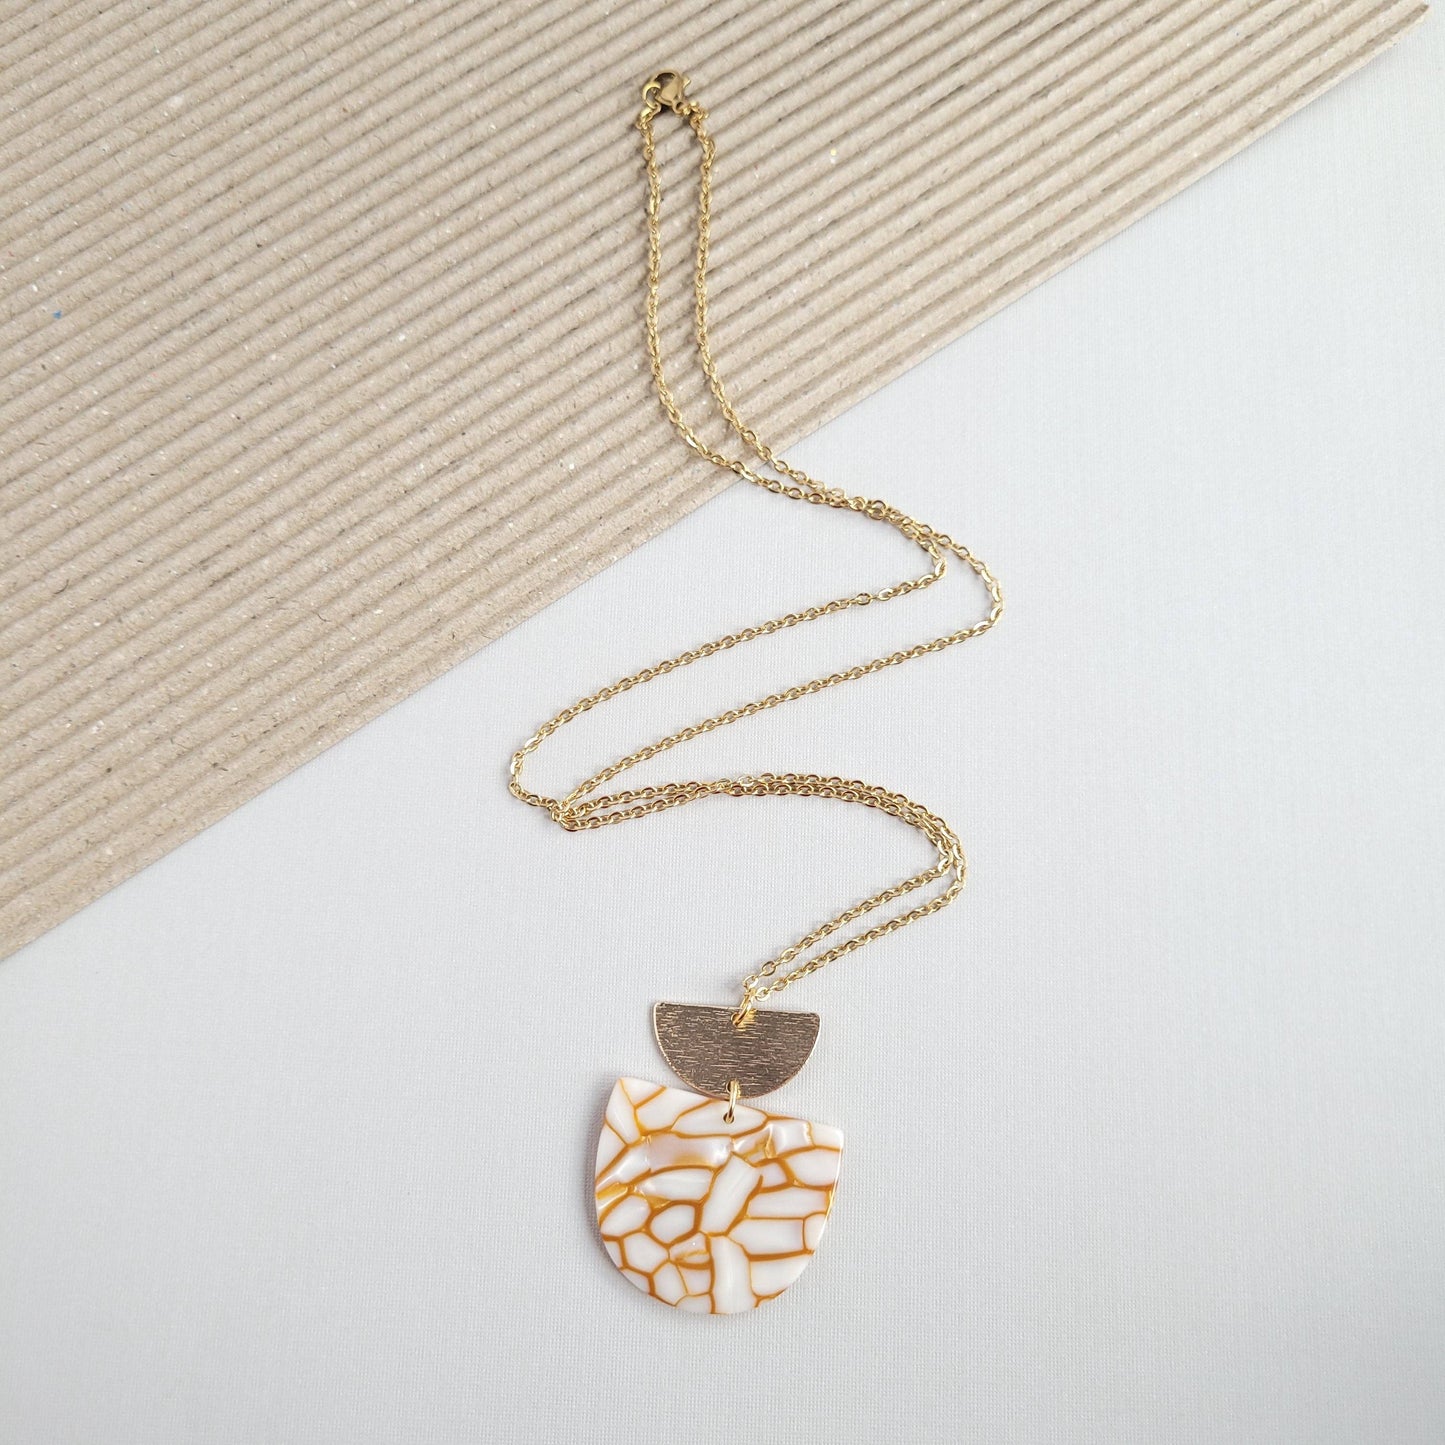 Harper Necklace - Pumpkin Spice / Pendant Chain Necklaces